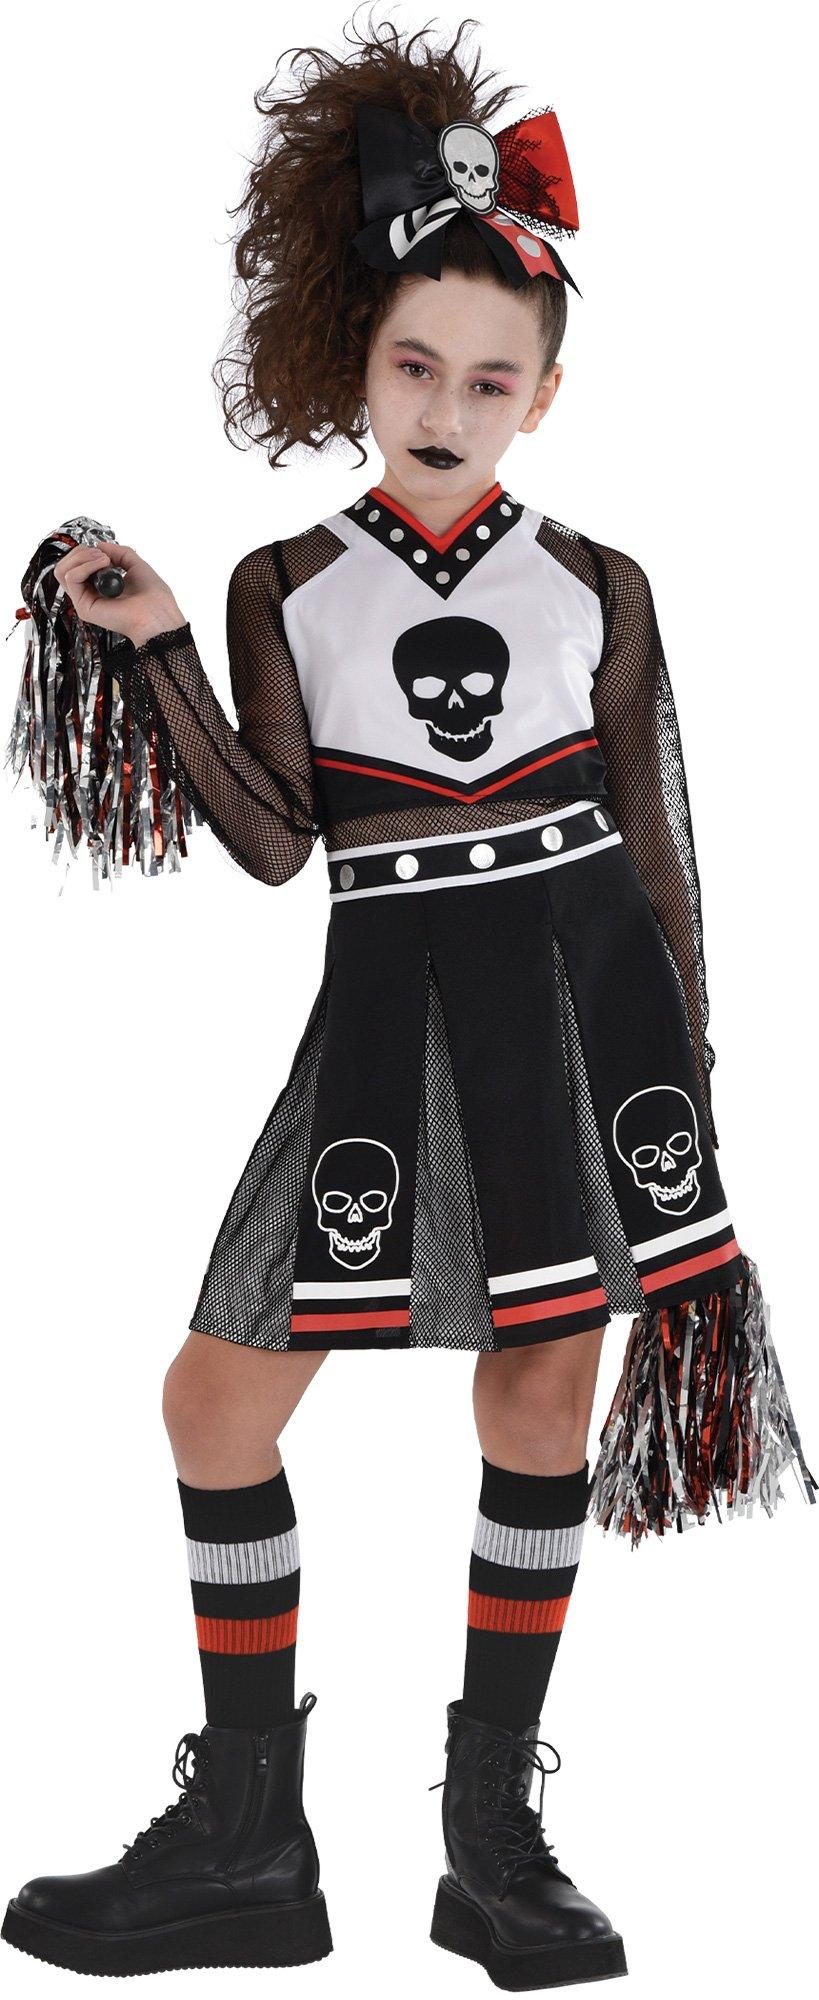 Custom Made Cheer Uniform, Girls Cheer Costume, Girls Cheerleading Outfit,  Halloween Costume, Girls Cheerleader Outfit, Cheerleader Uniform -   Canada